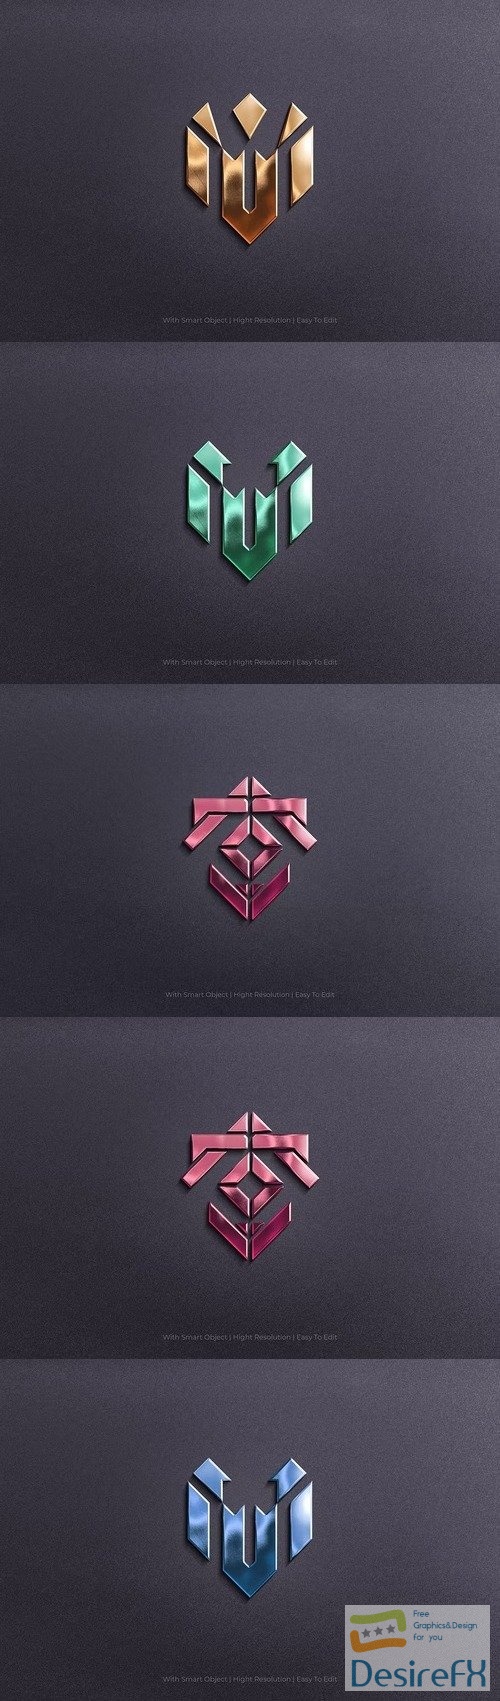 Realistic Mockup Logo - 3D Branded Emblem Effect